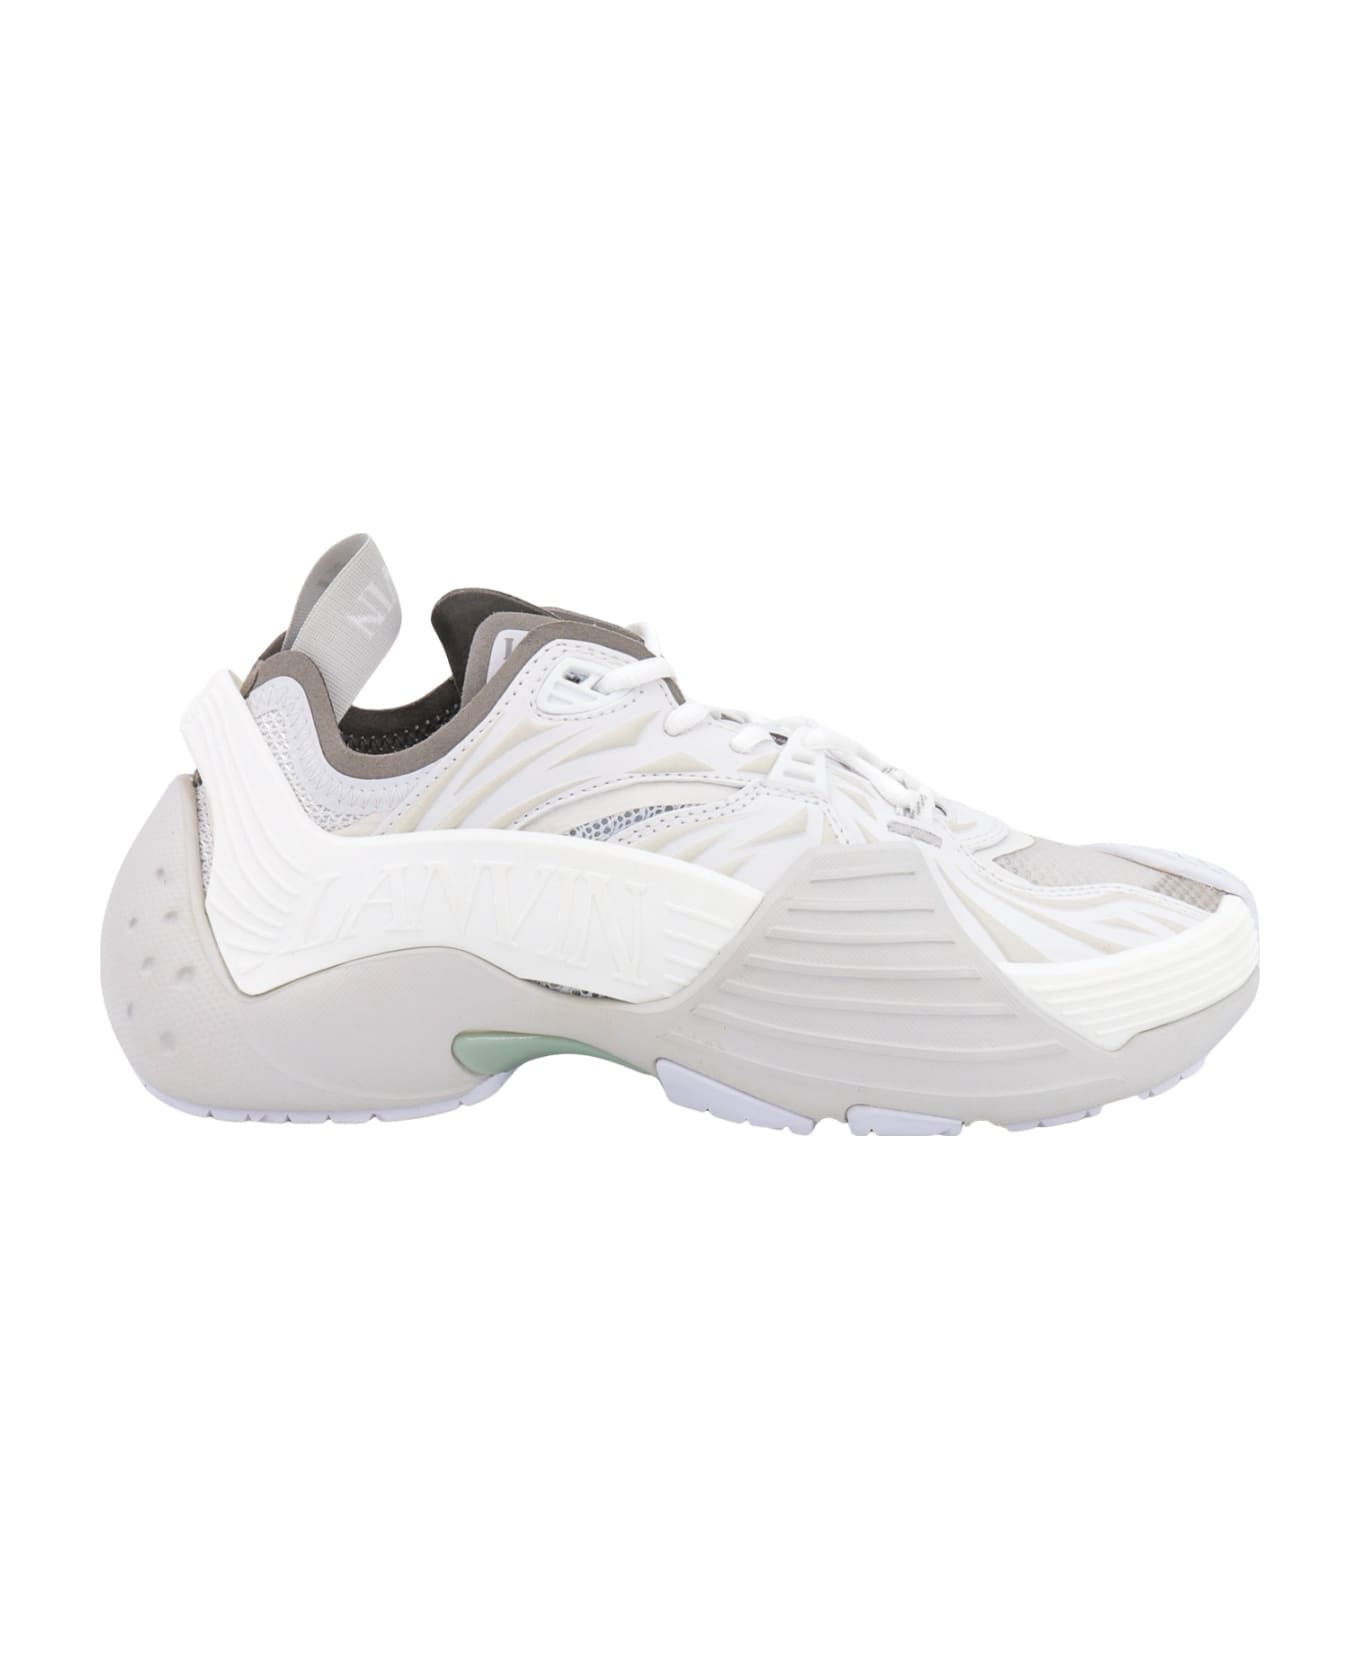 Lanvin Flash-x Sneakers - White